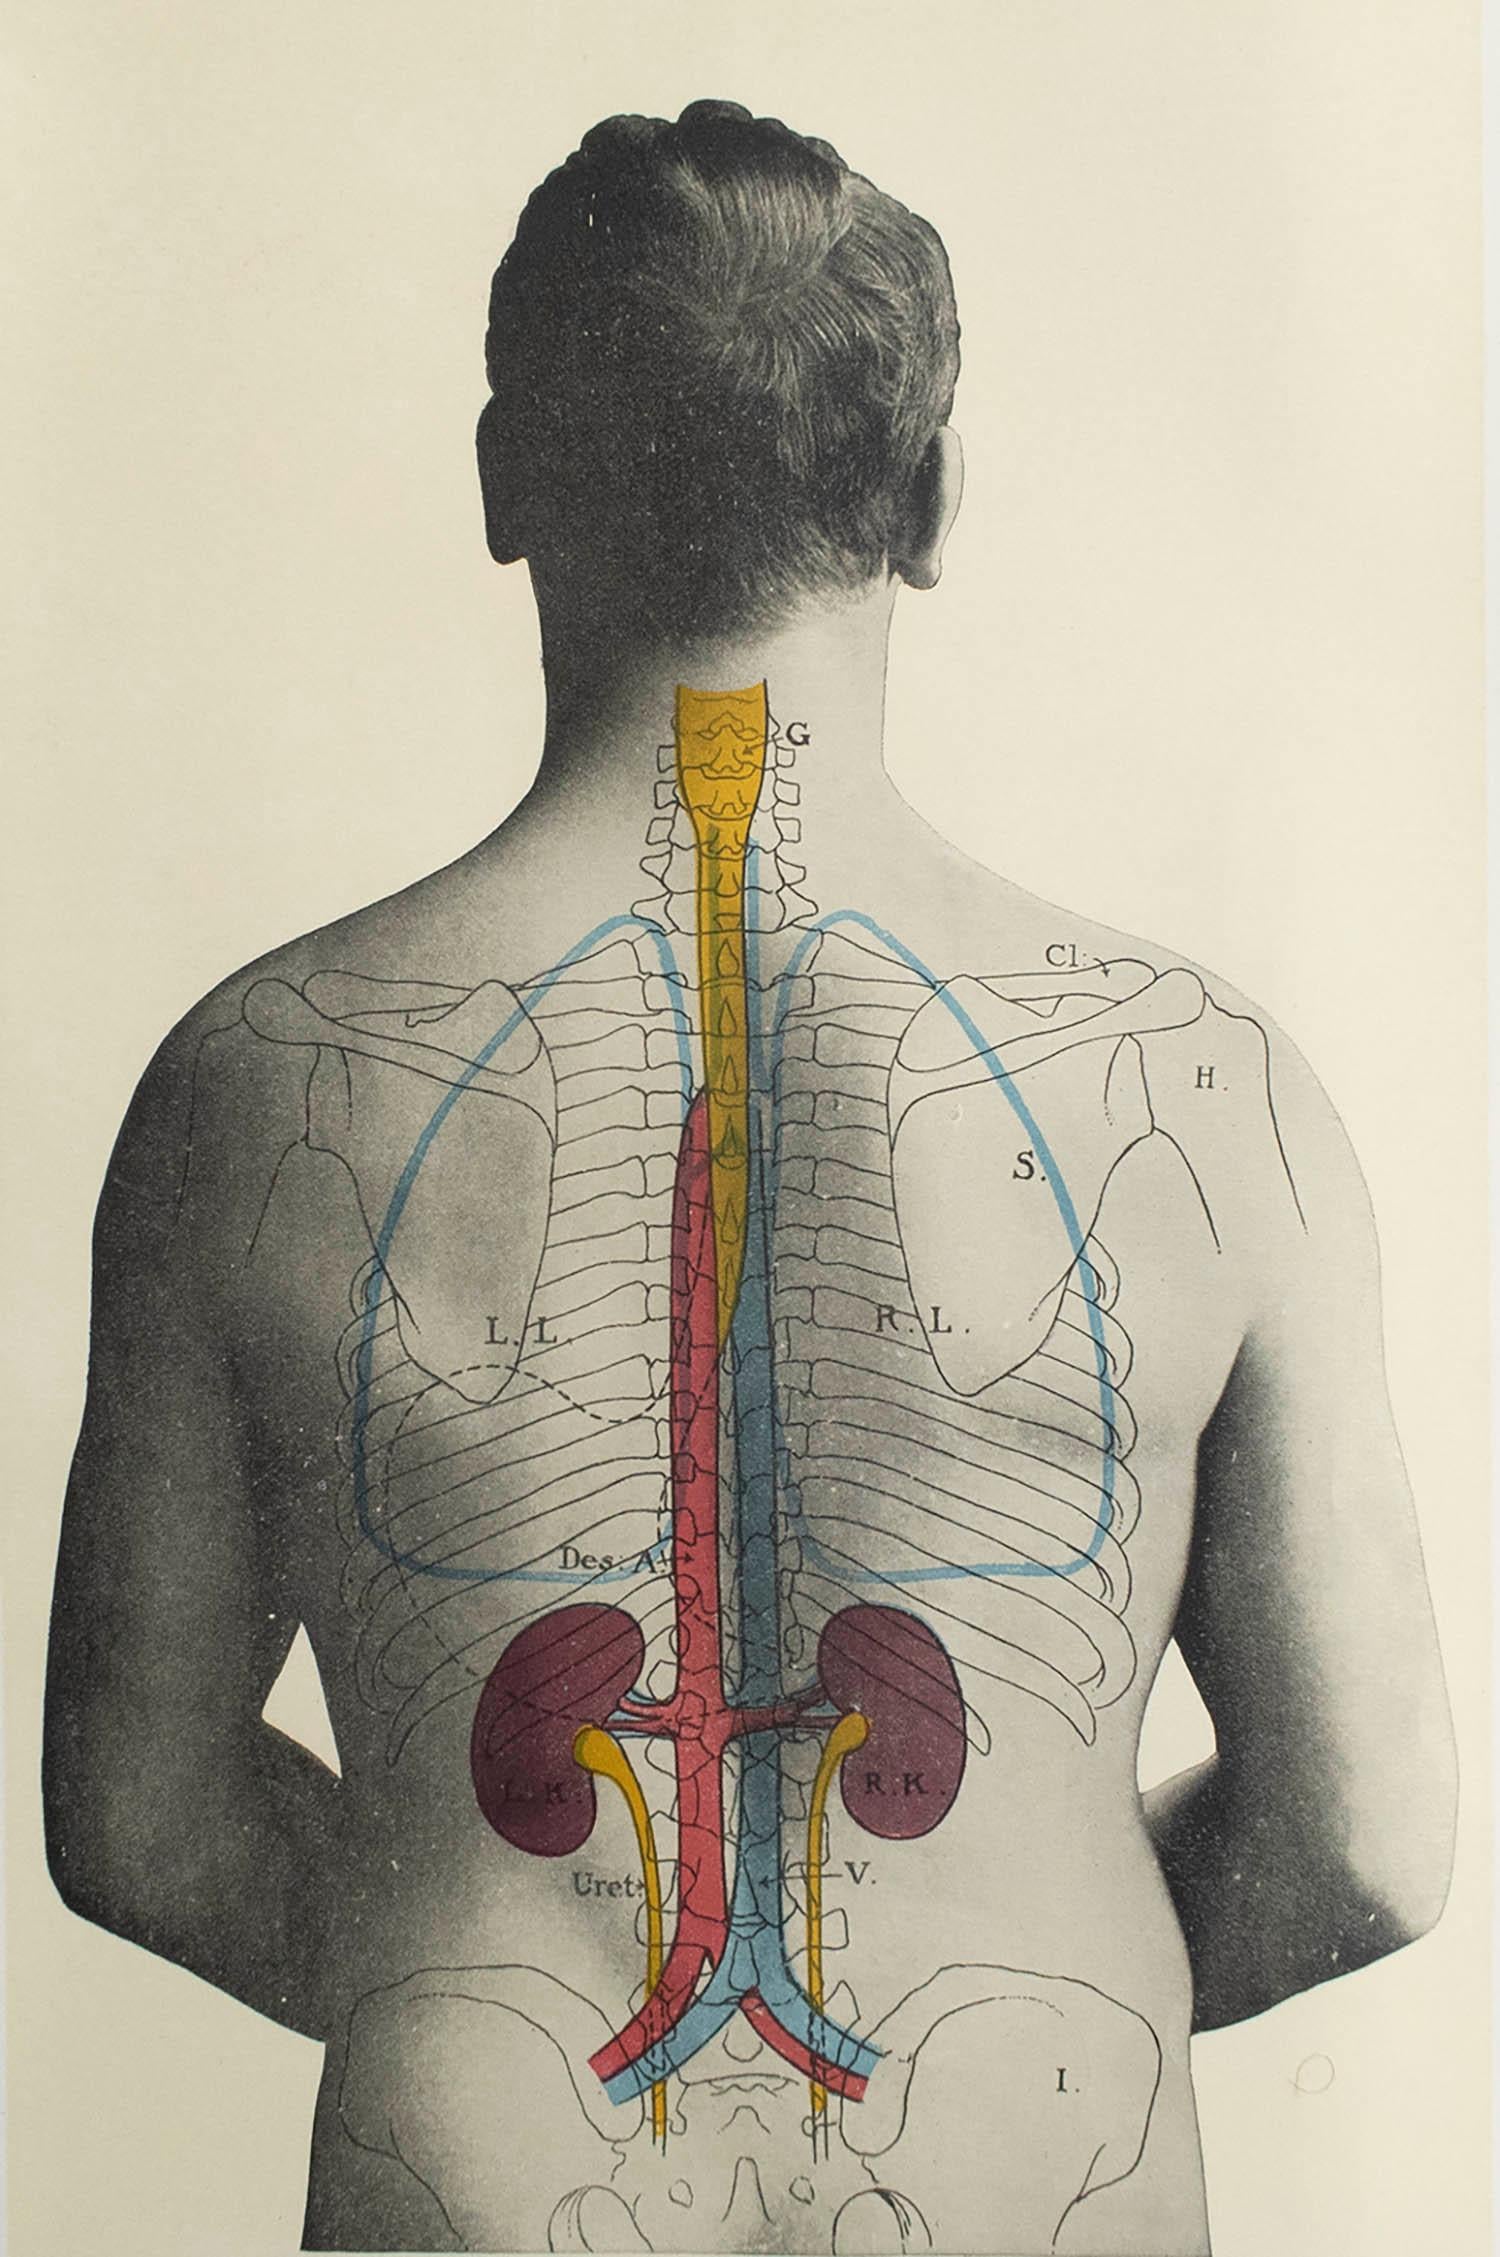 Großes Bild von medizinischem Interesse

Ungerahmt.

Veröffentlicht, um 1900.





